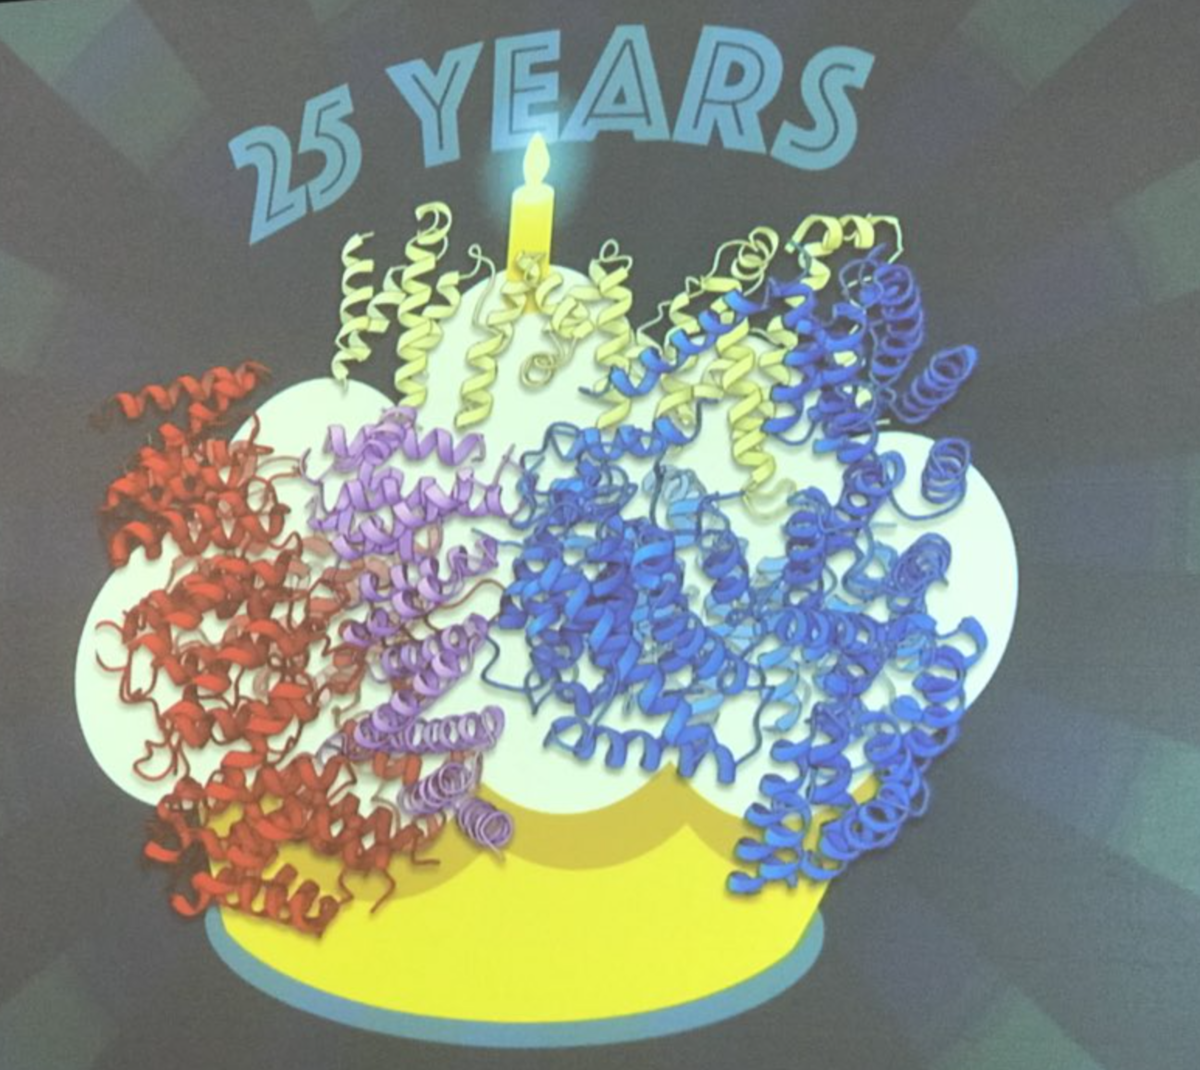 Структура белка гентингтина, представленная Др. Кочанеком в качестве праздничного торта на 25-летний юбилей со дня открытия гена БГ  